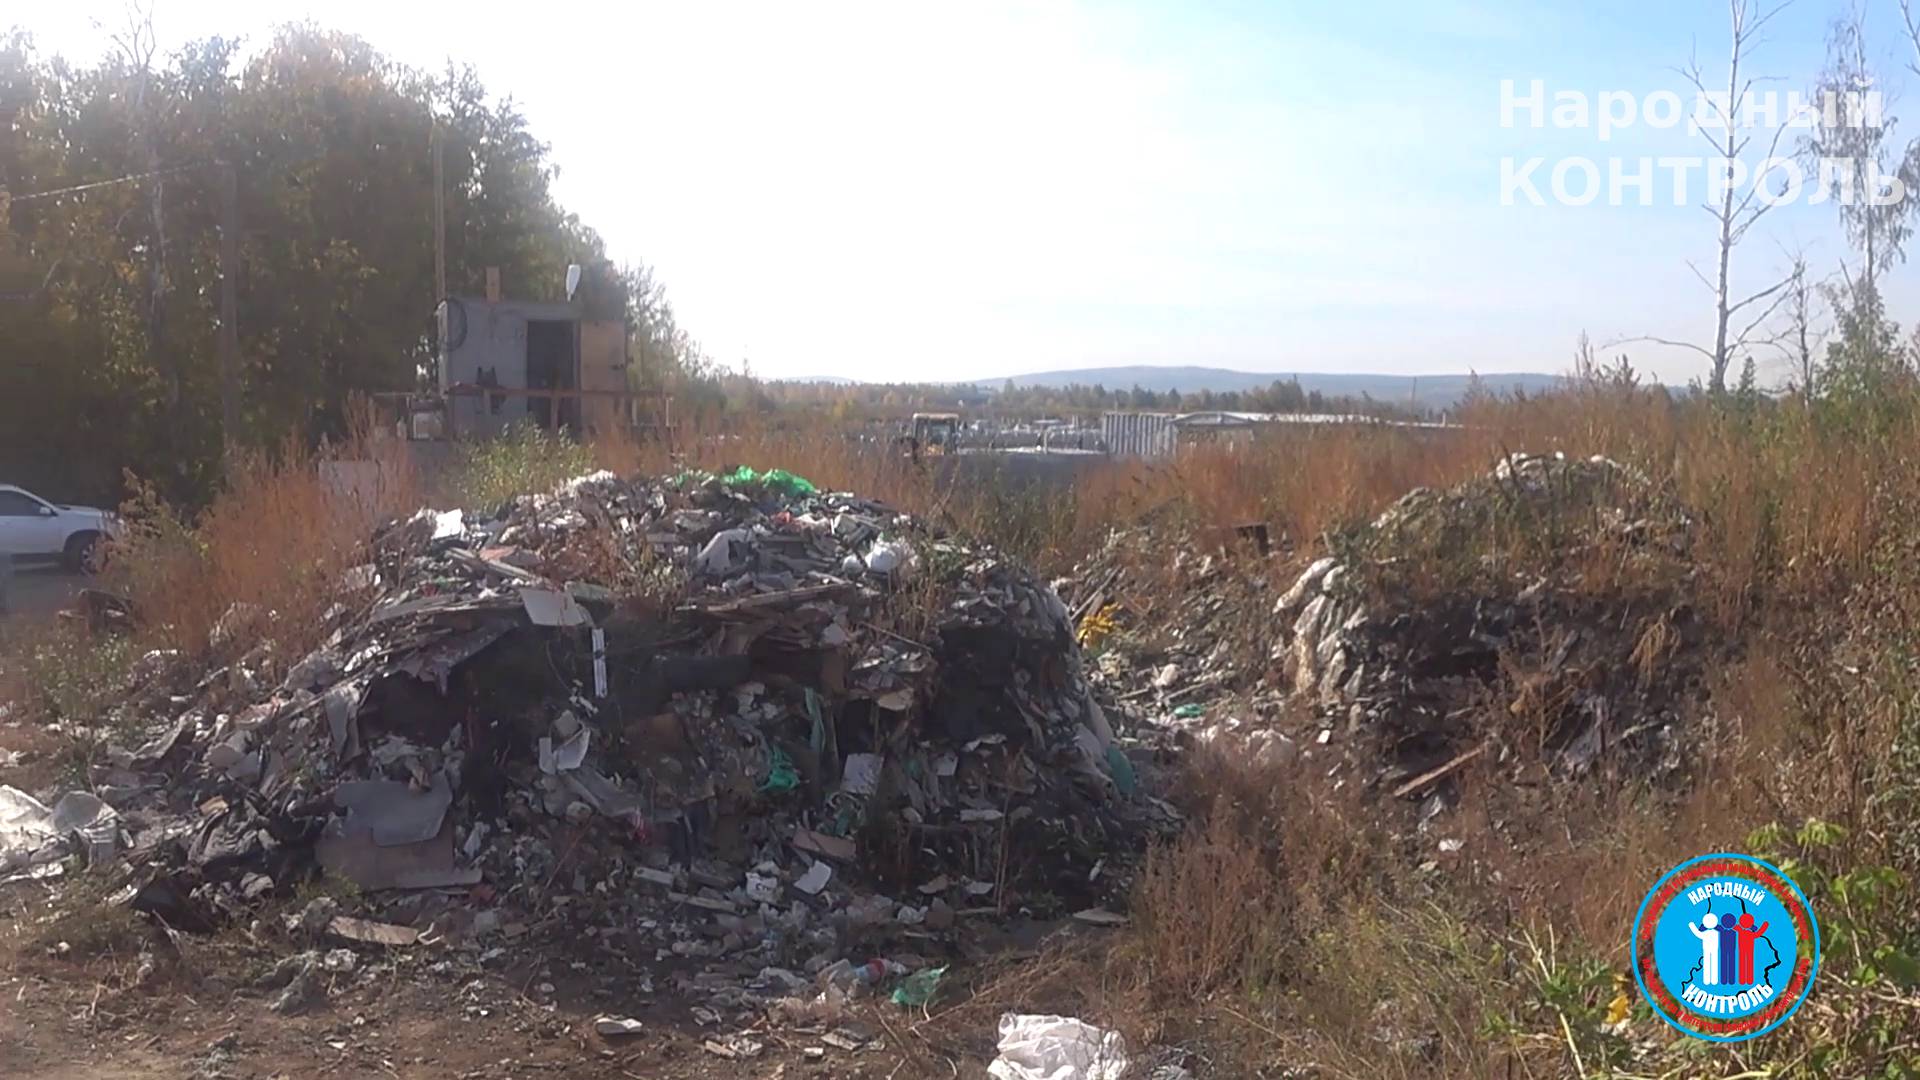 Скопления отходов недалеко от логистического центра ООО «Абсолют» по улице Черняховского, 88 А в Екатеринбурге